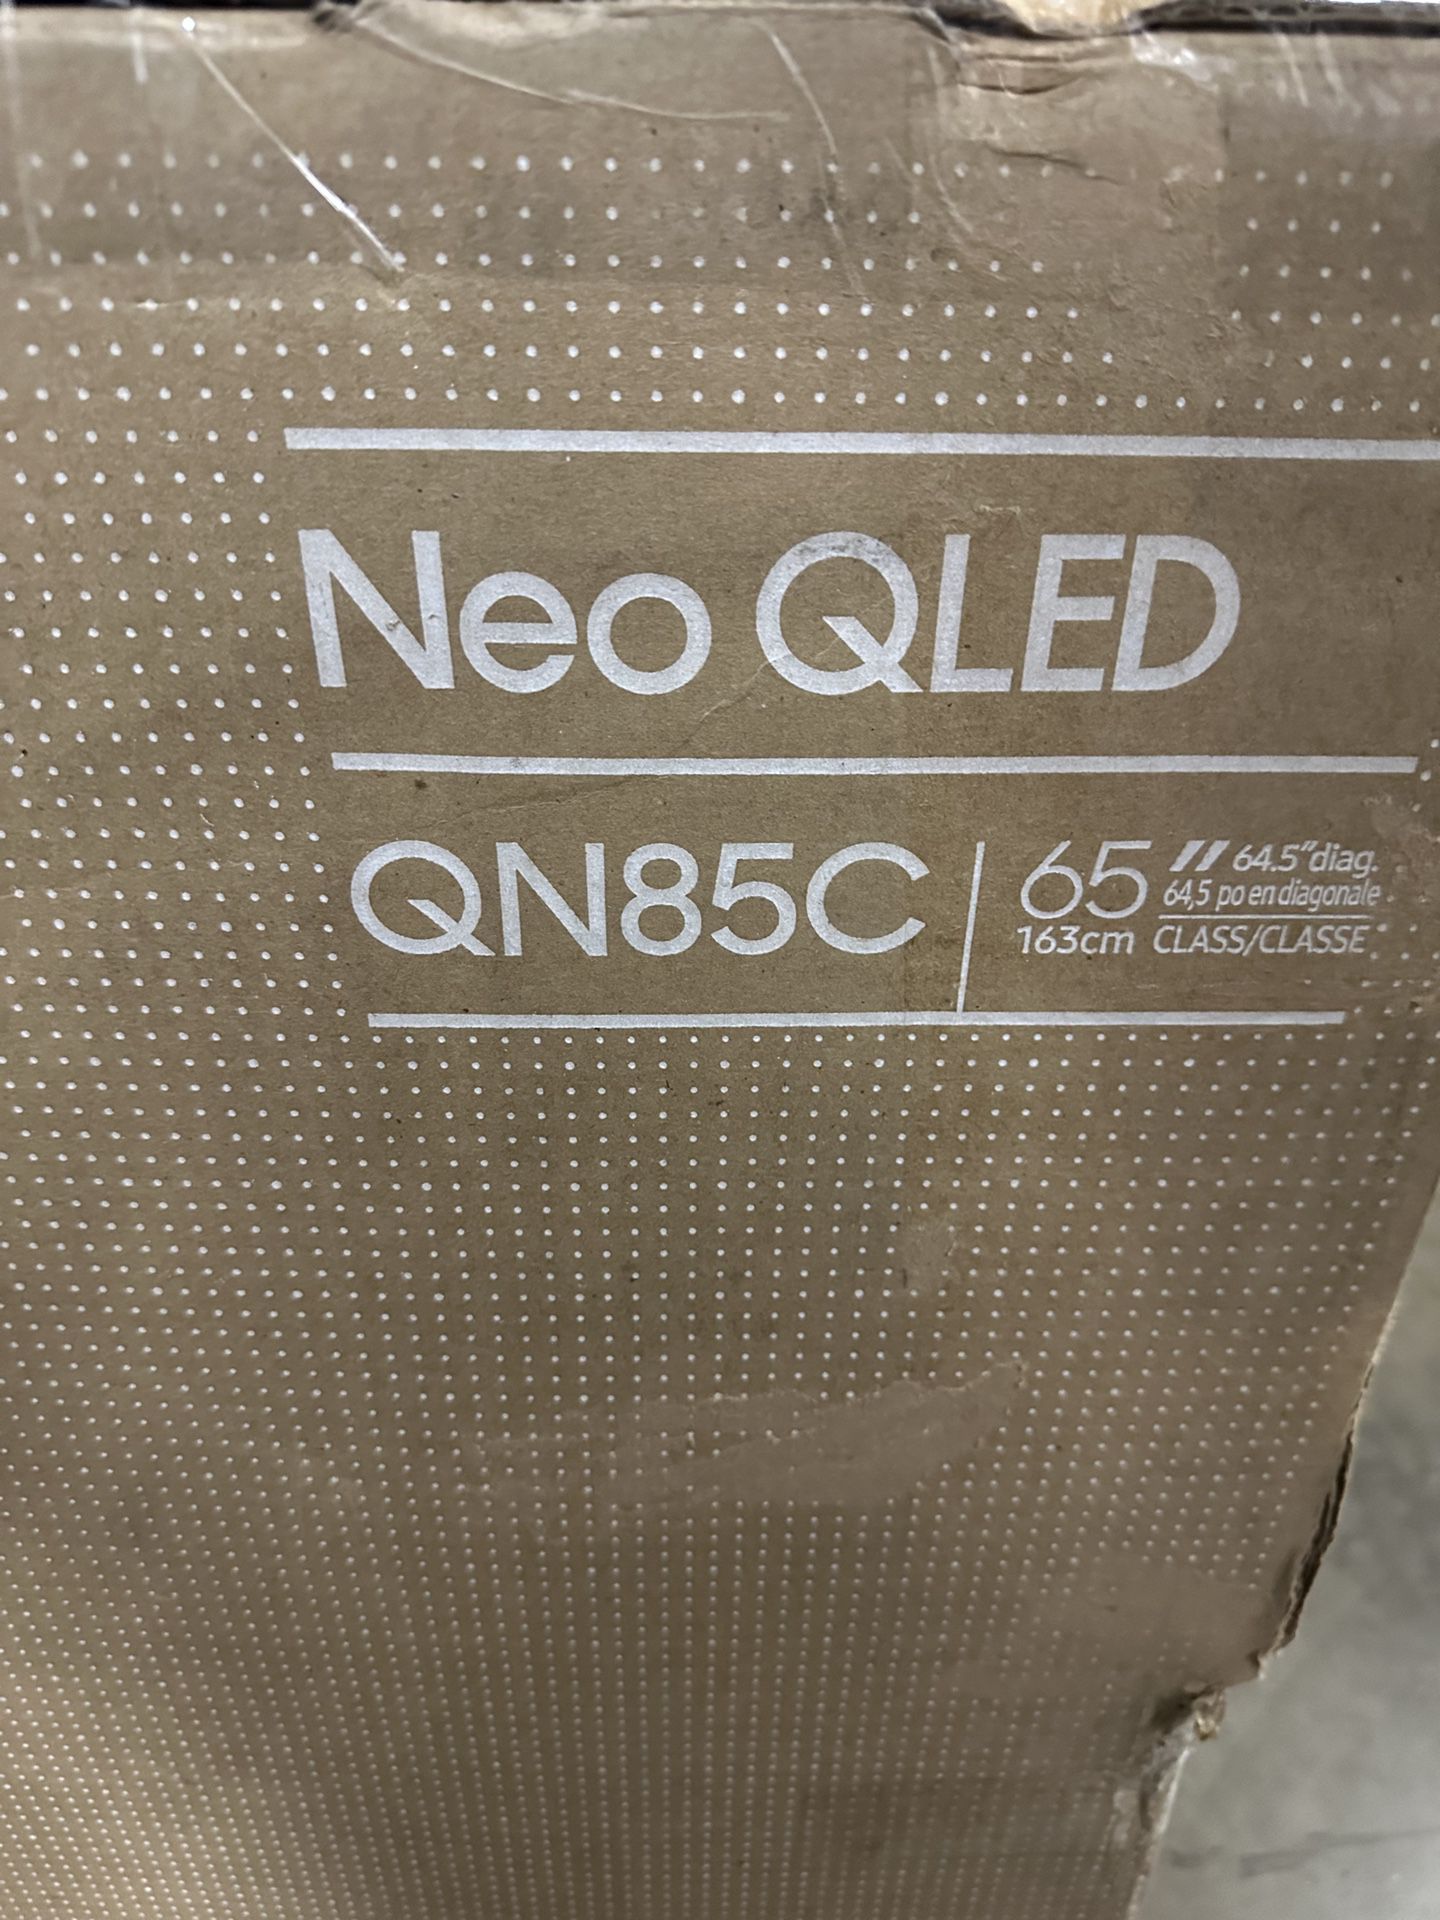 Samsung - 65" Class QN85C Neo QLED 4K UHD Smart Tizen TV